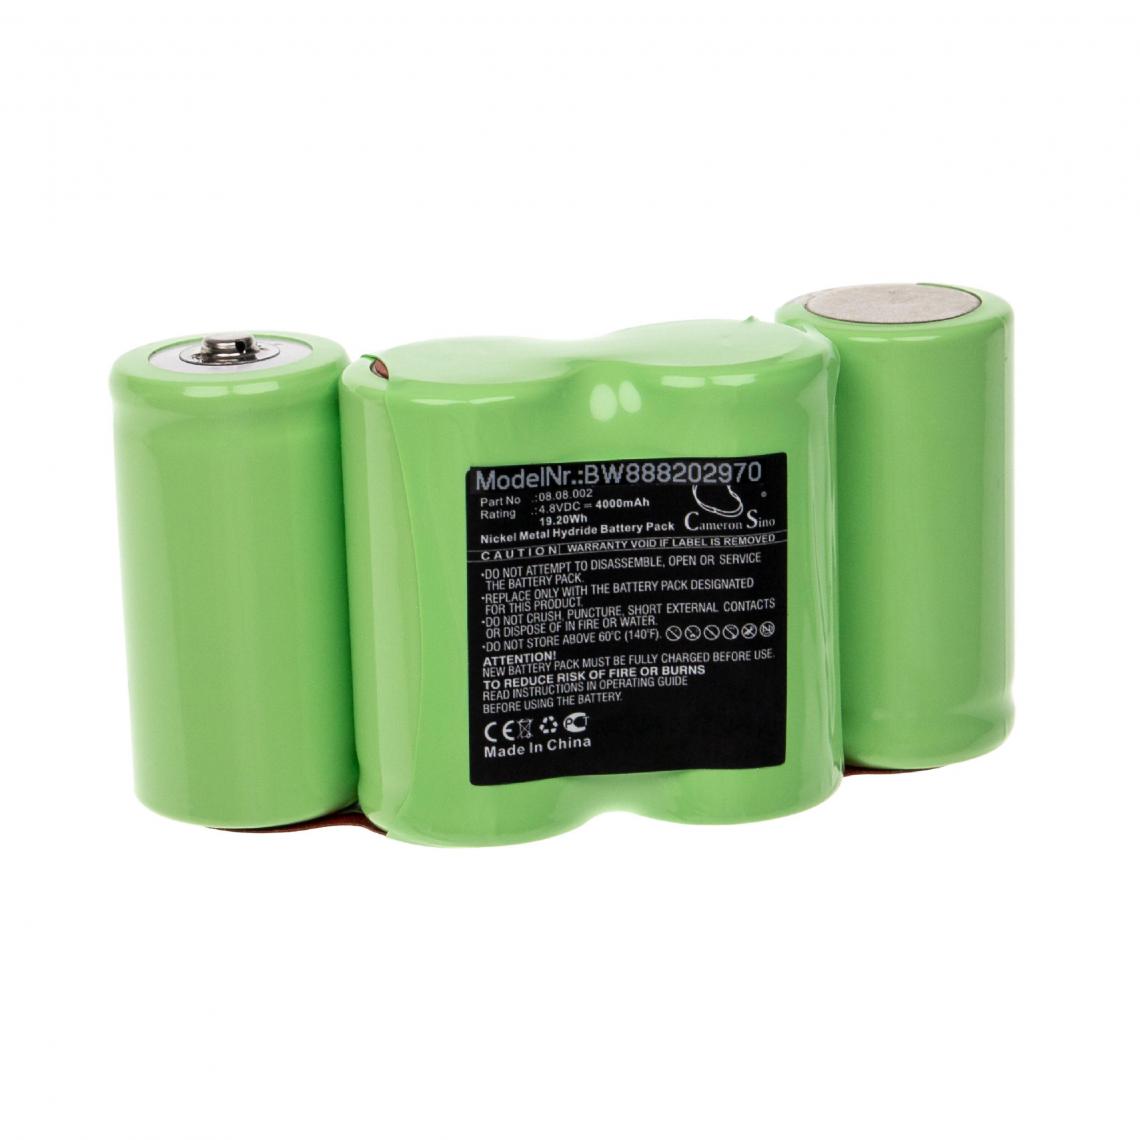 Vhbw - vhbw Batterie remplacement pour Theis 08.08.002 pour outil de mesure (4000mAh, 4,8V, NiMH) - Piles rechargeables